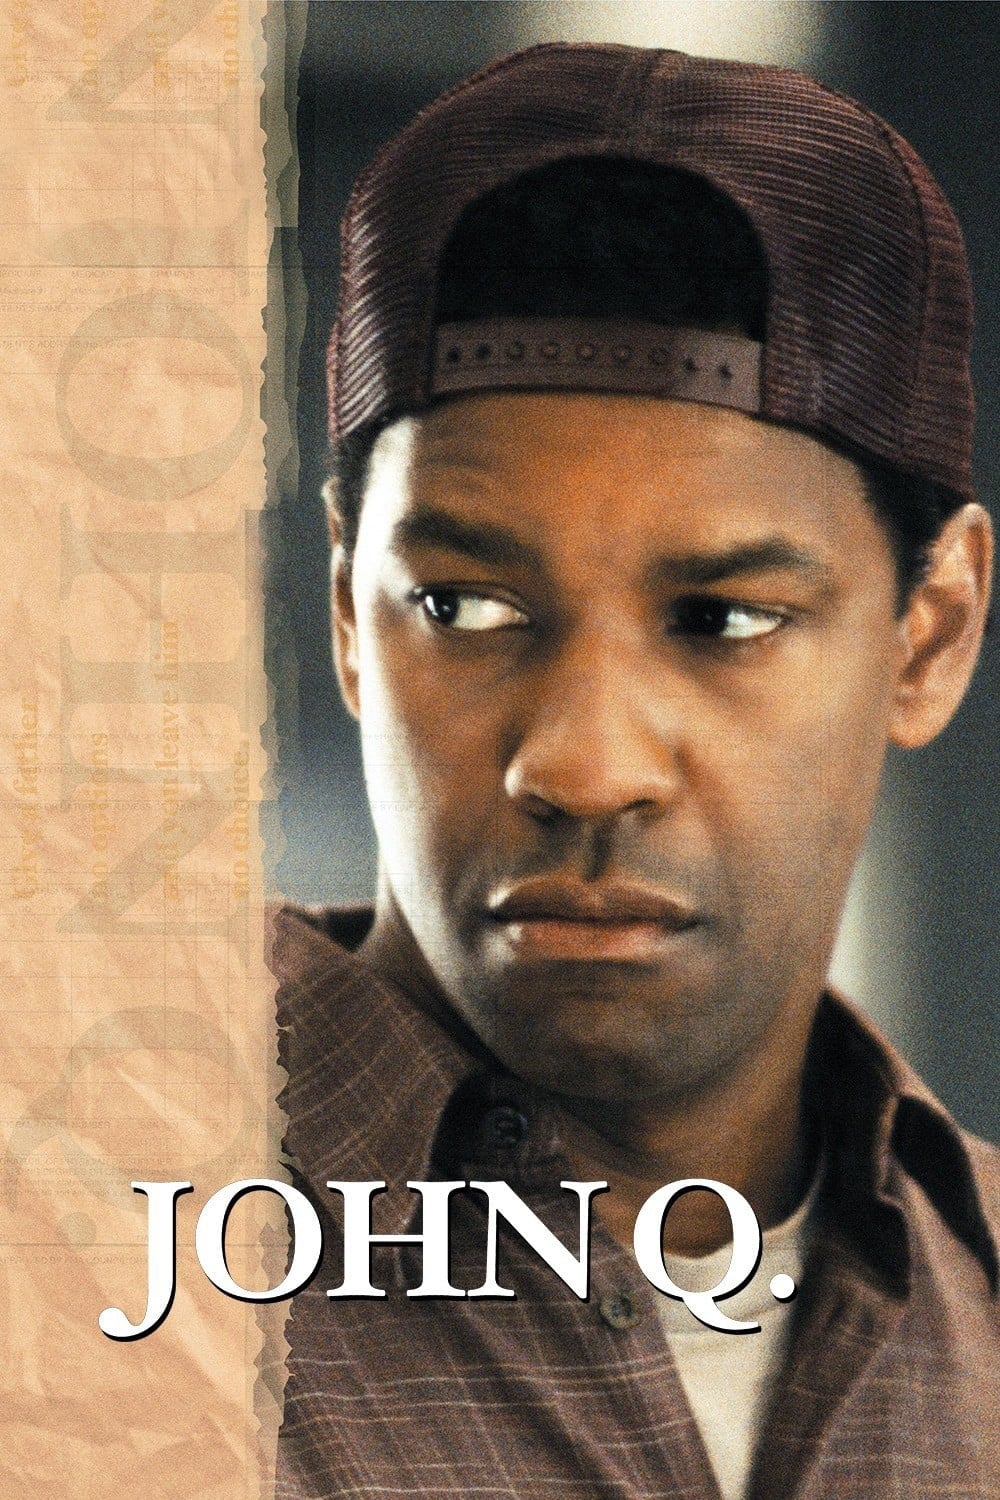 Kẻ Cùng Đường (John Q) [2002]